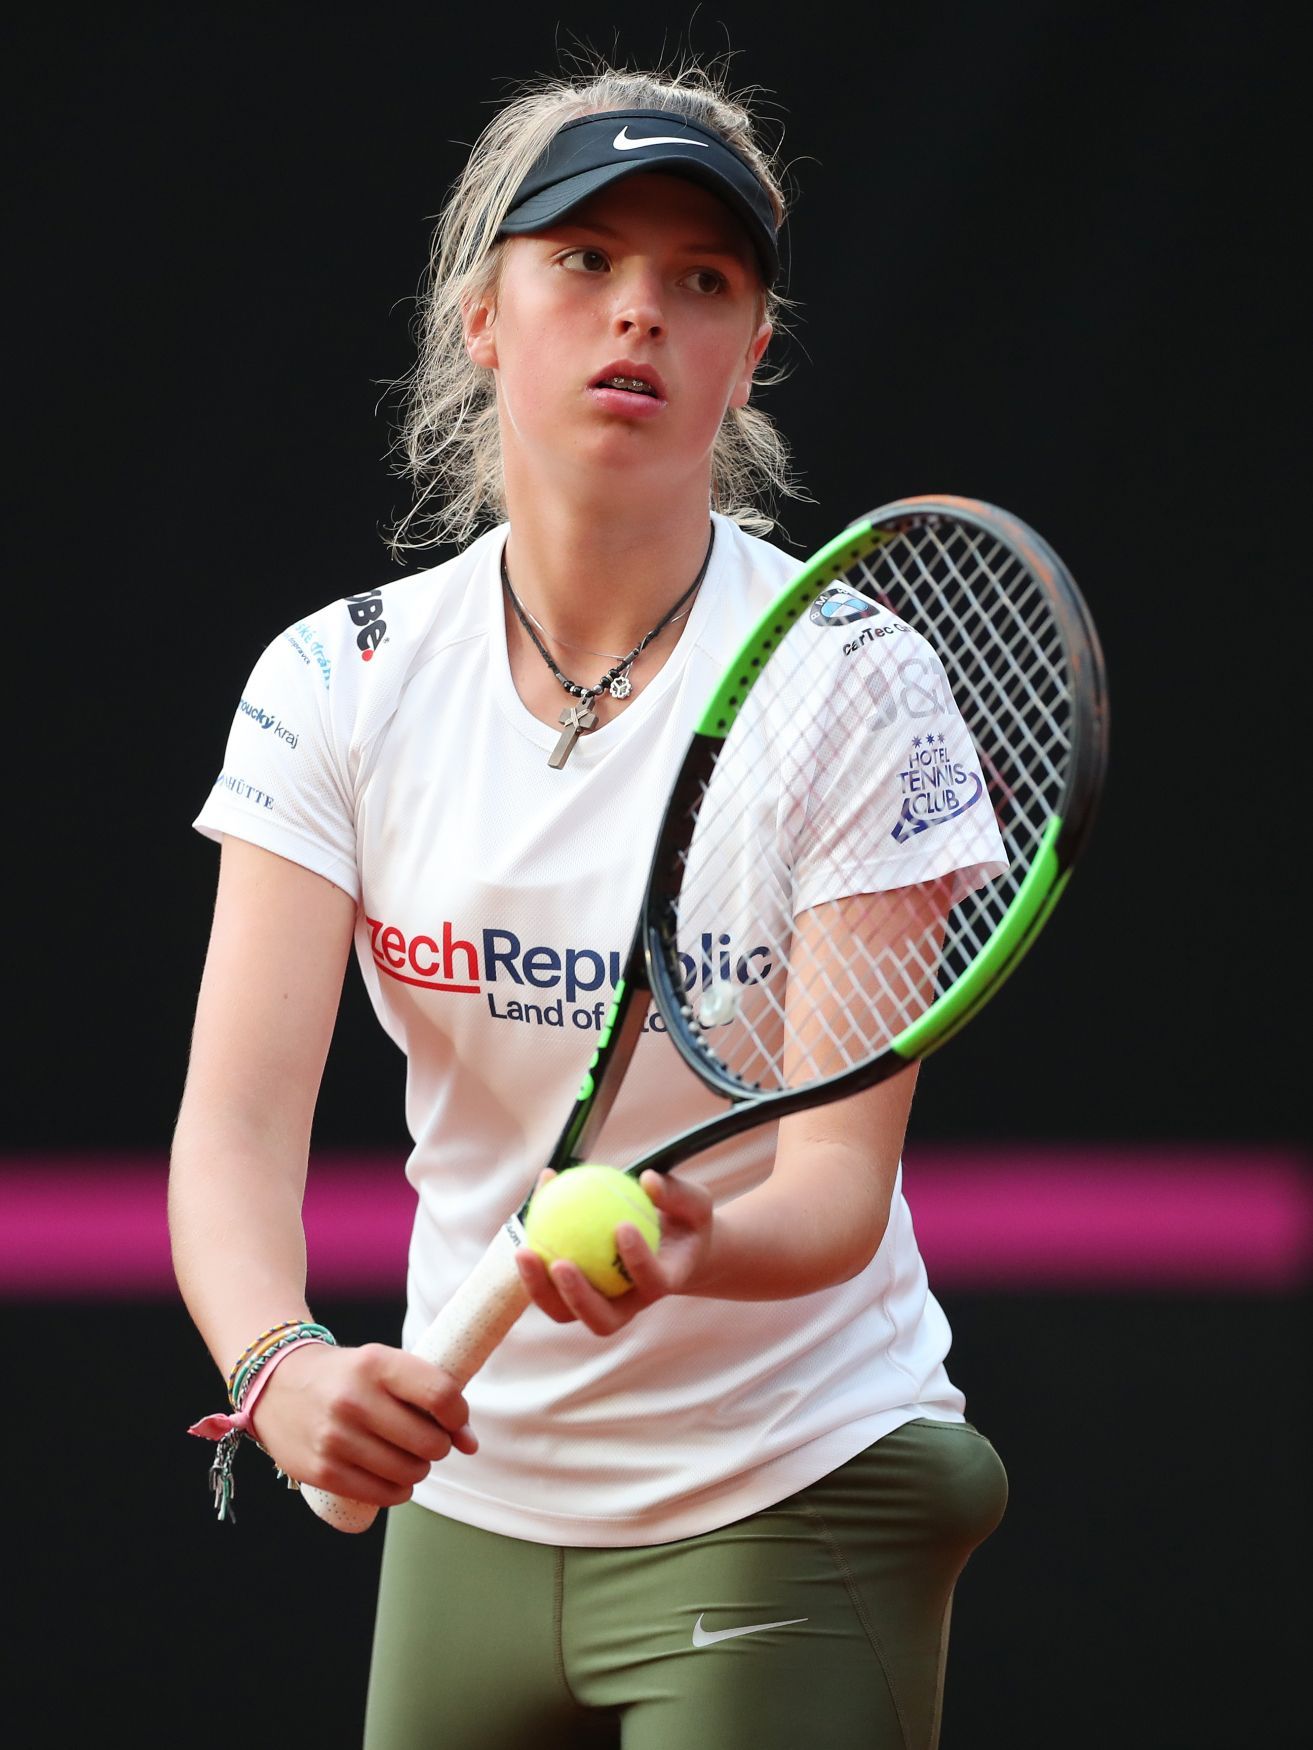 Česká tenistka Linda Fruhvirtová